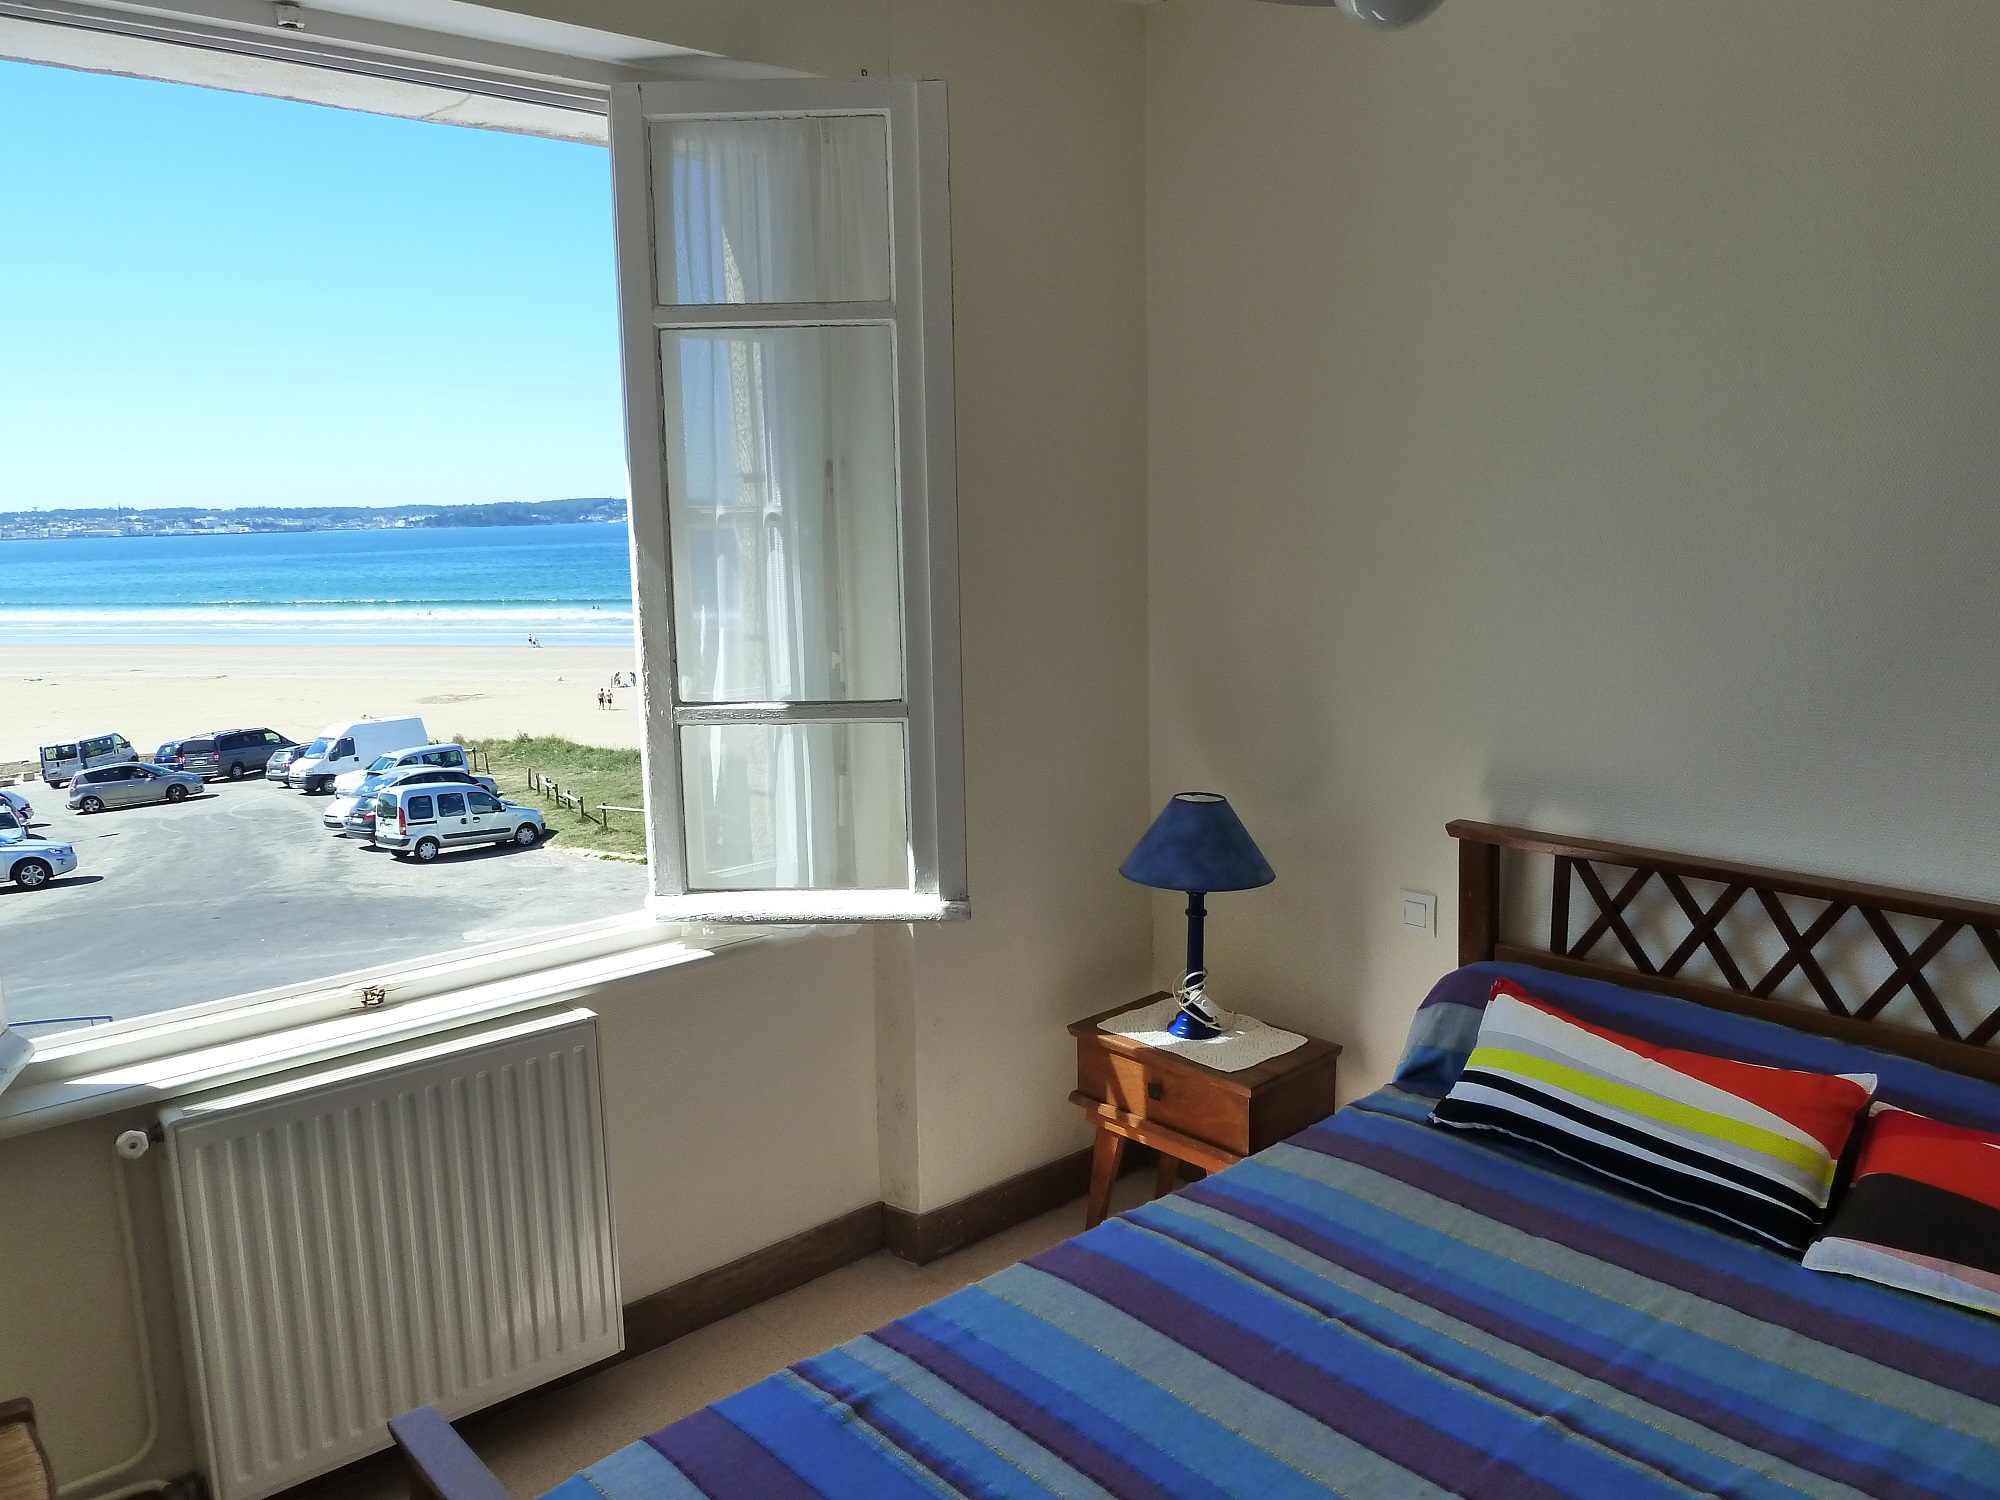 Appartement en location avec vue sur mer et la baie de Douarnenez, plage de Kervel